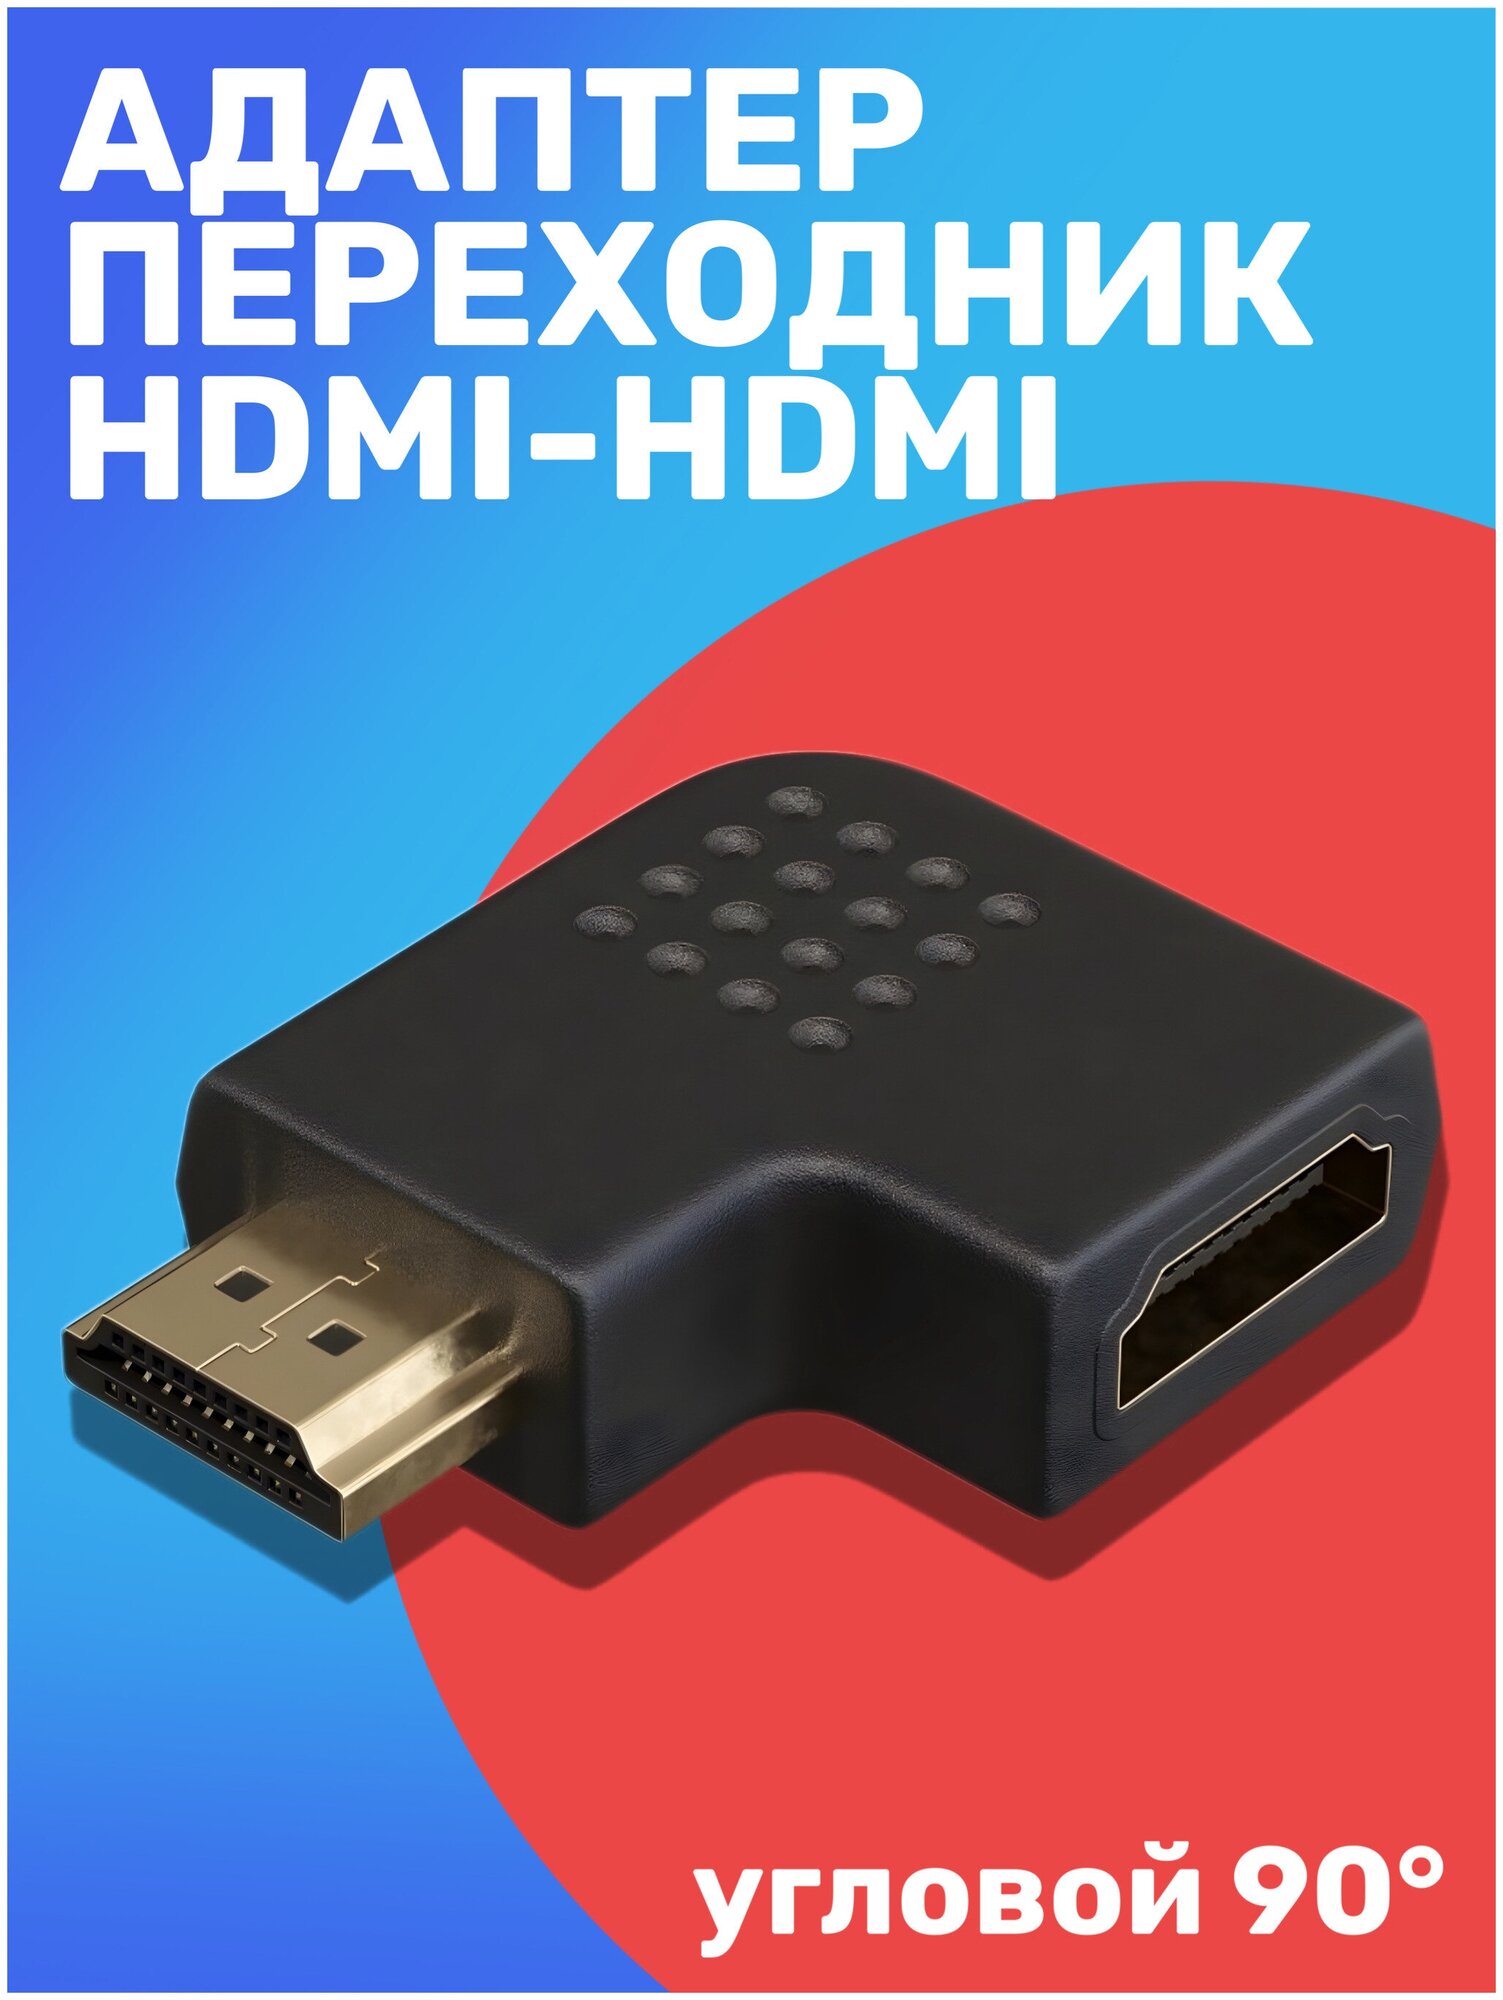 Адаптер-переходник GSMIN BR-50 HDMI (F) - HDMI (M) (Угловой, 90 градусов) (Черный)